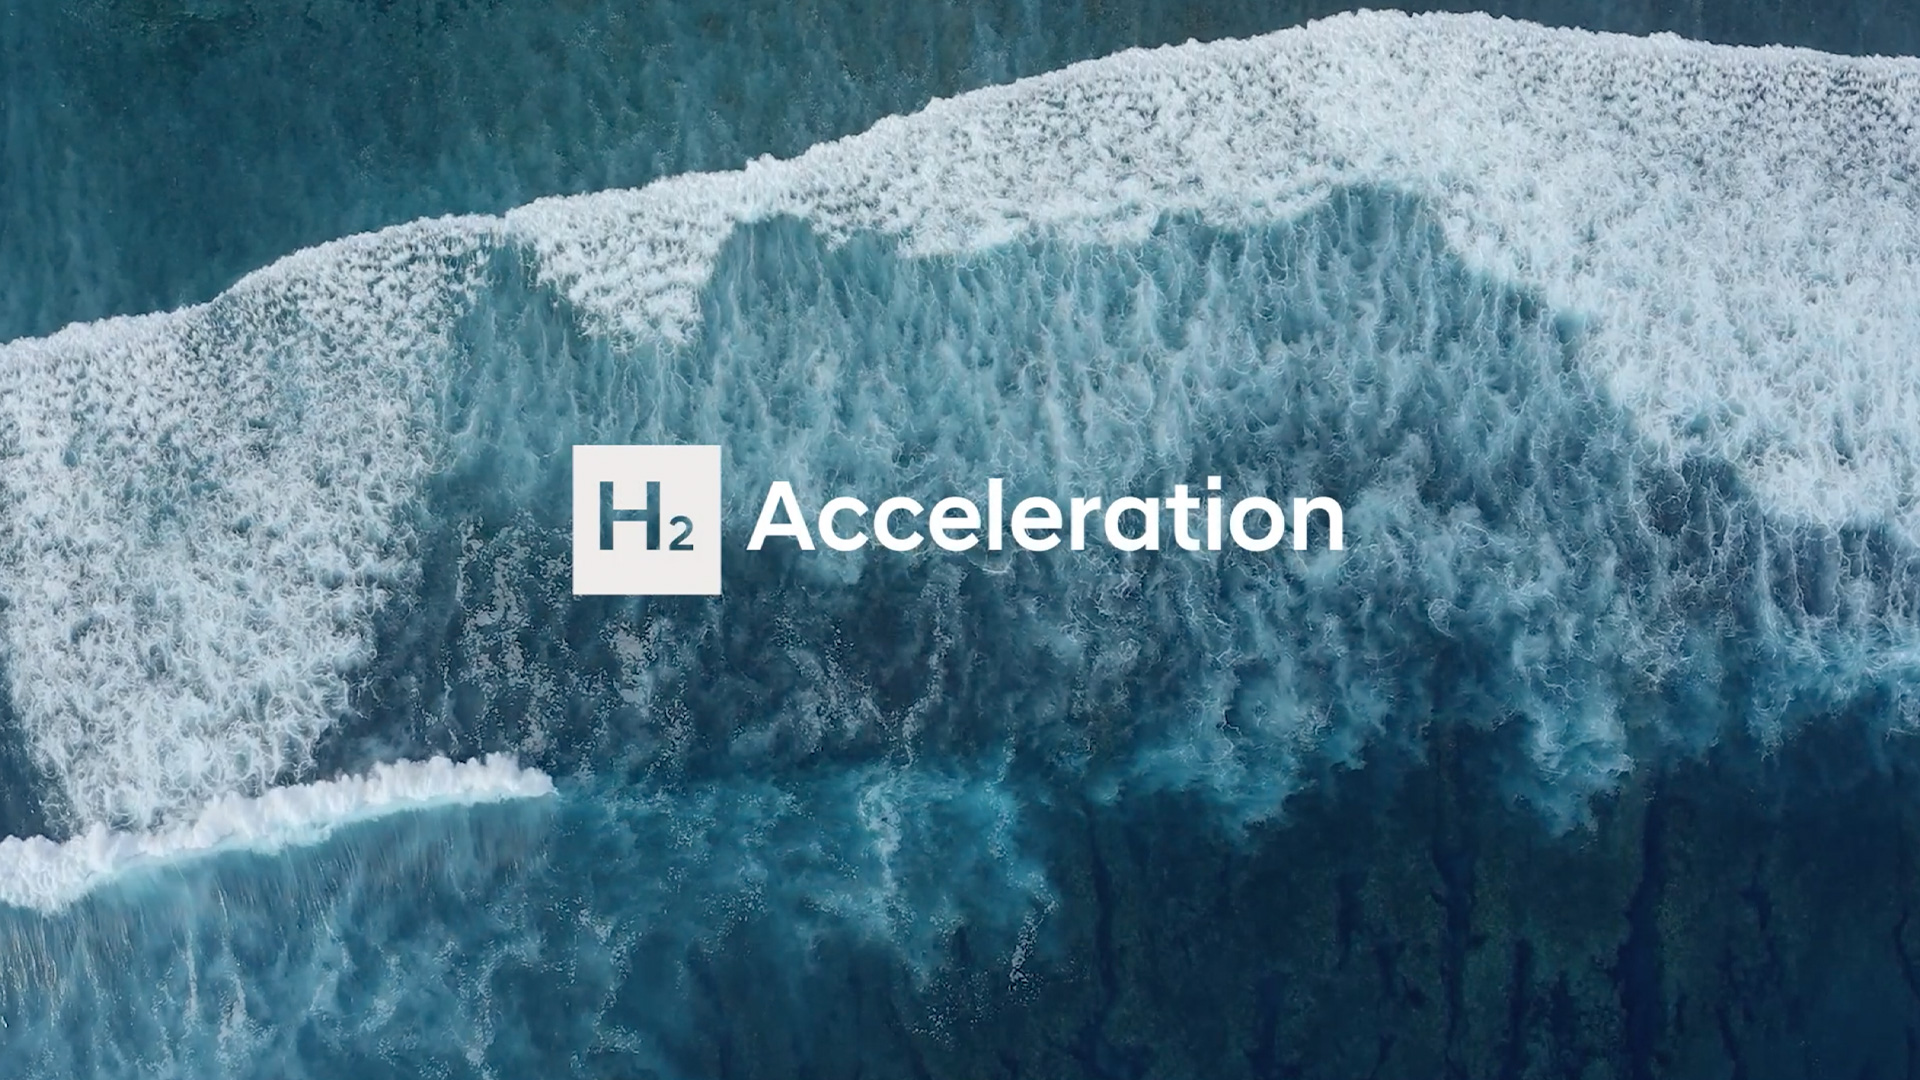 현대자동차 H2 이코노미 캠페인 포스터, H2 Acceleration